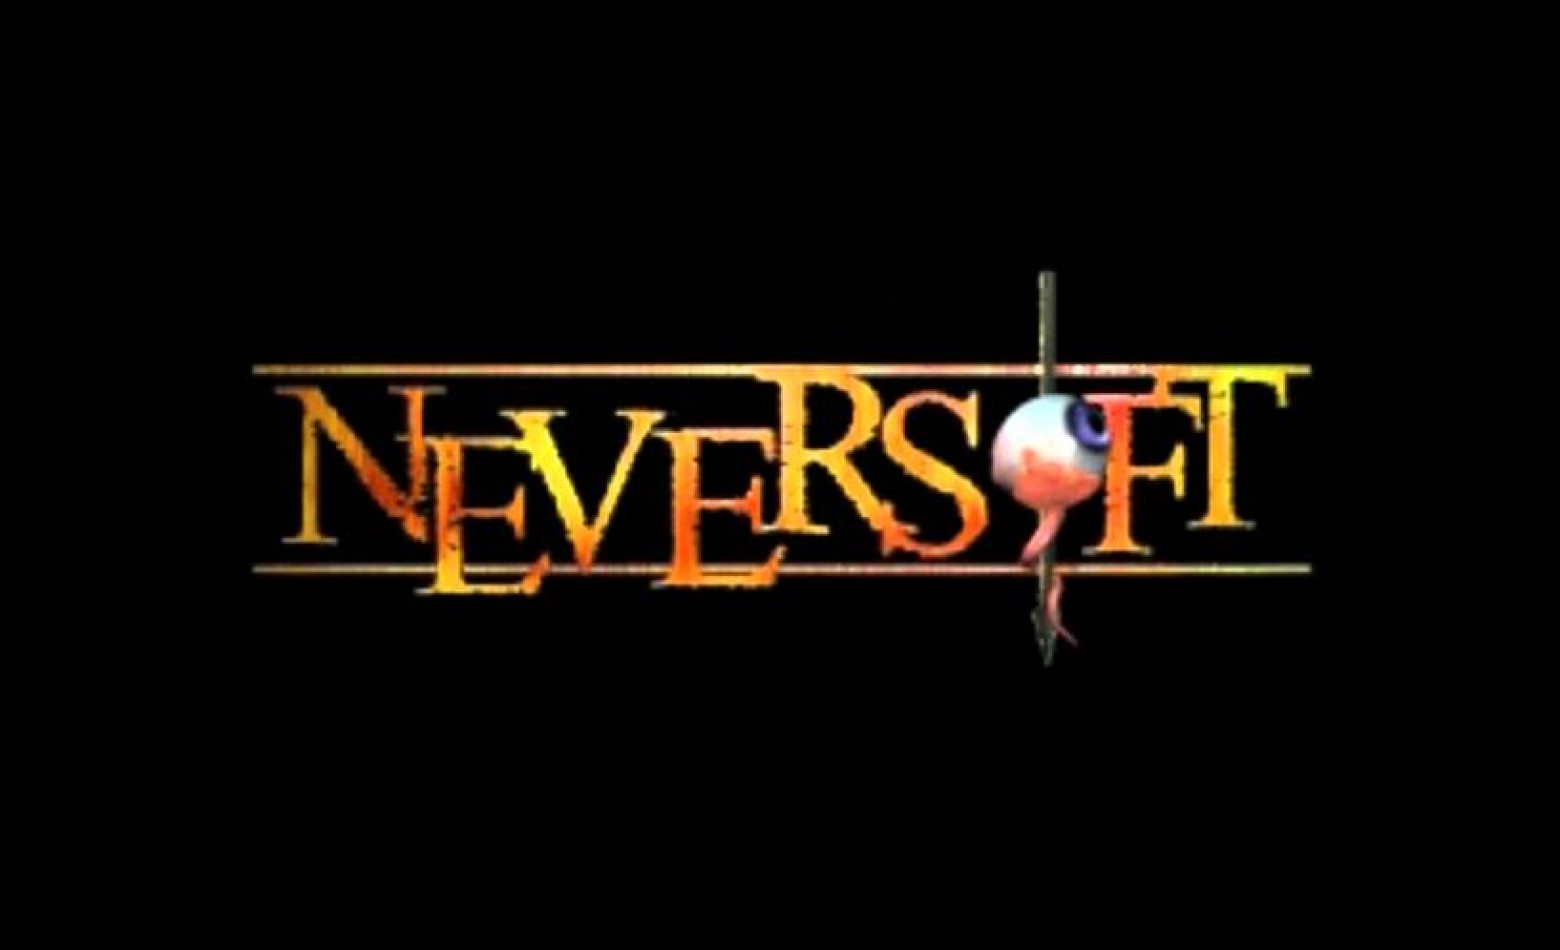 Neversoft fecha as portas para se juntar à Infinity Ward [ATUALIZADO]